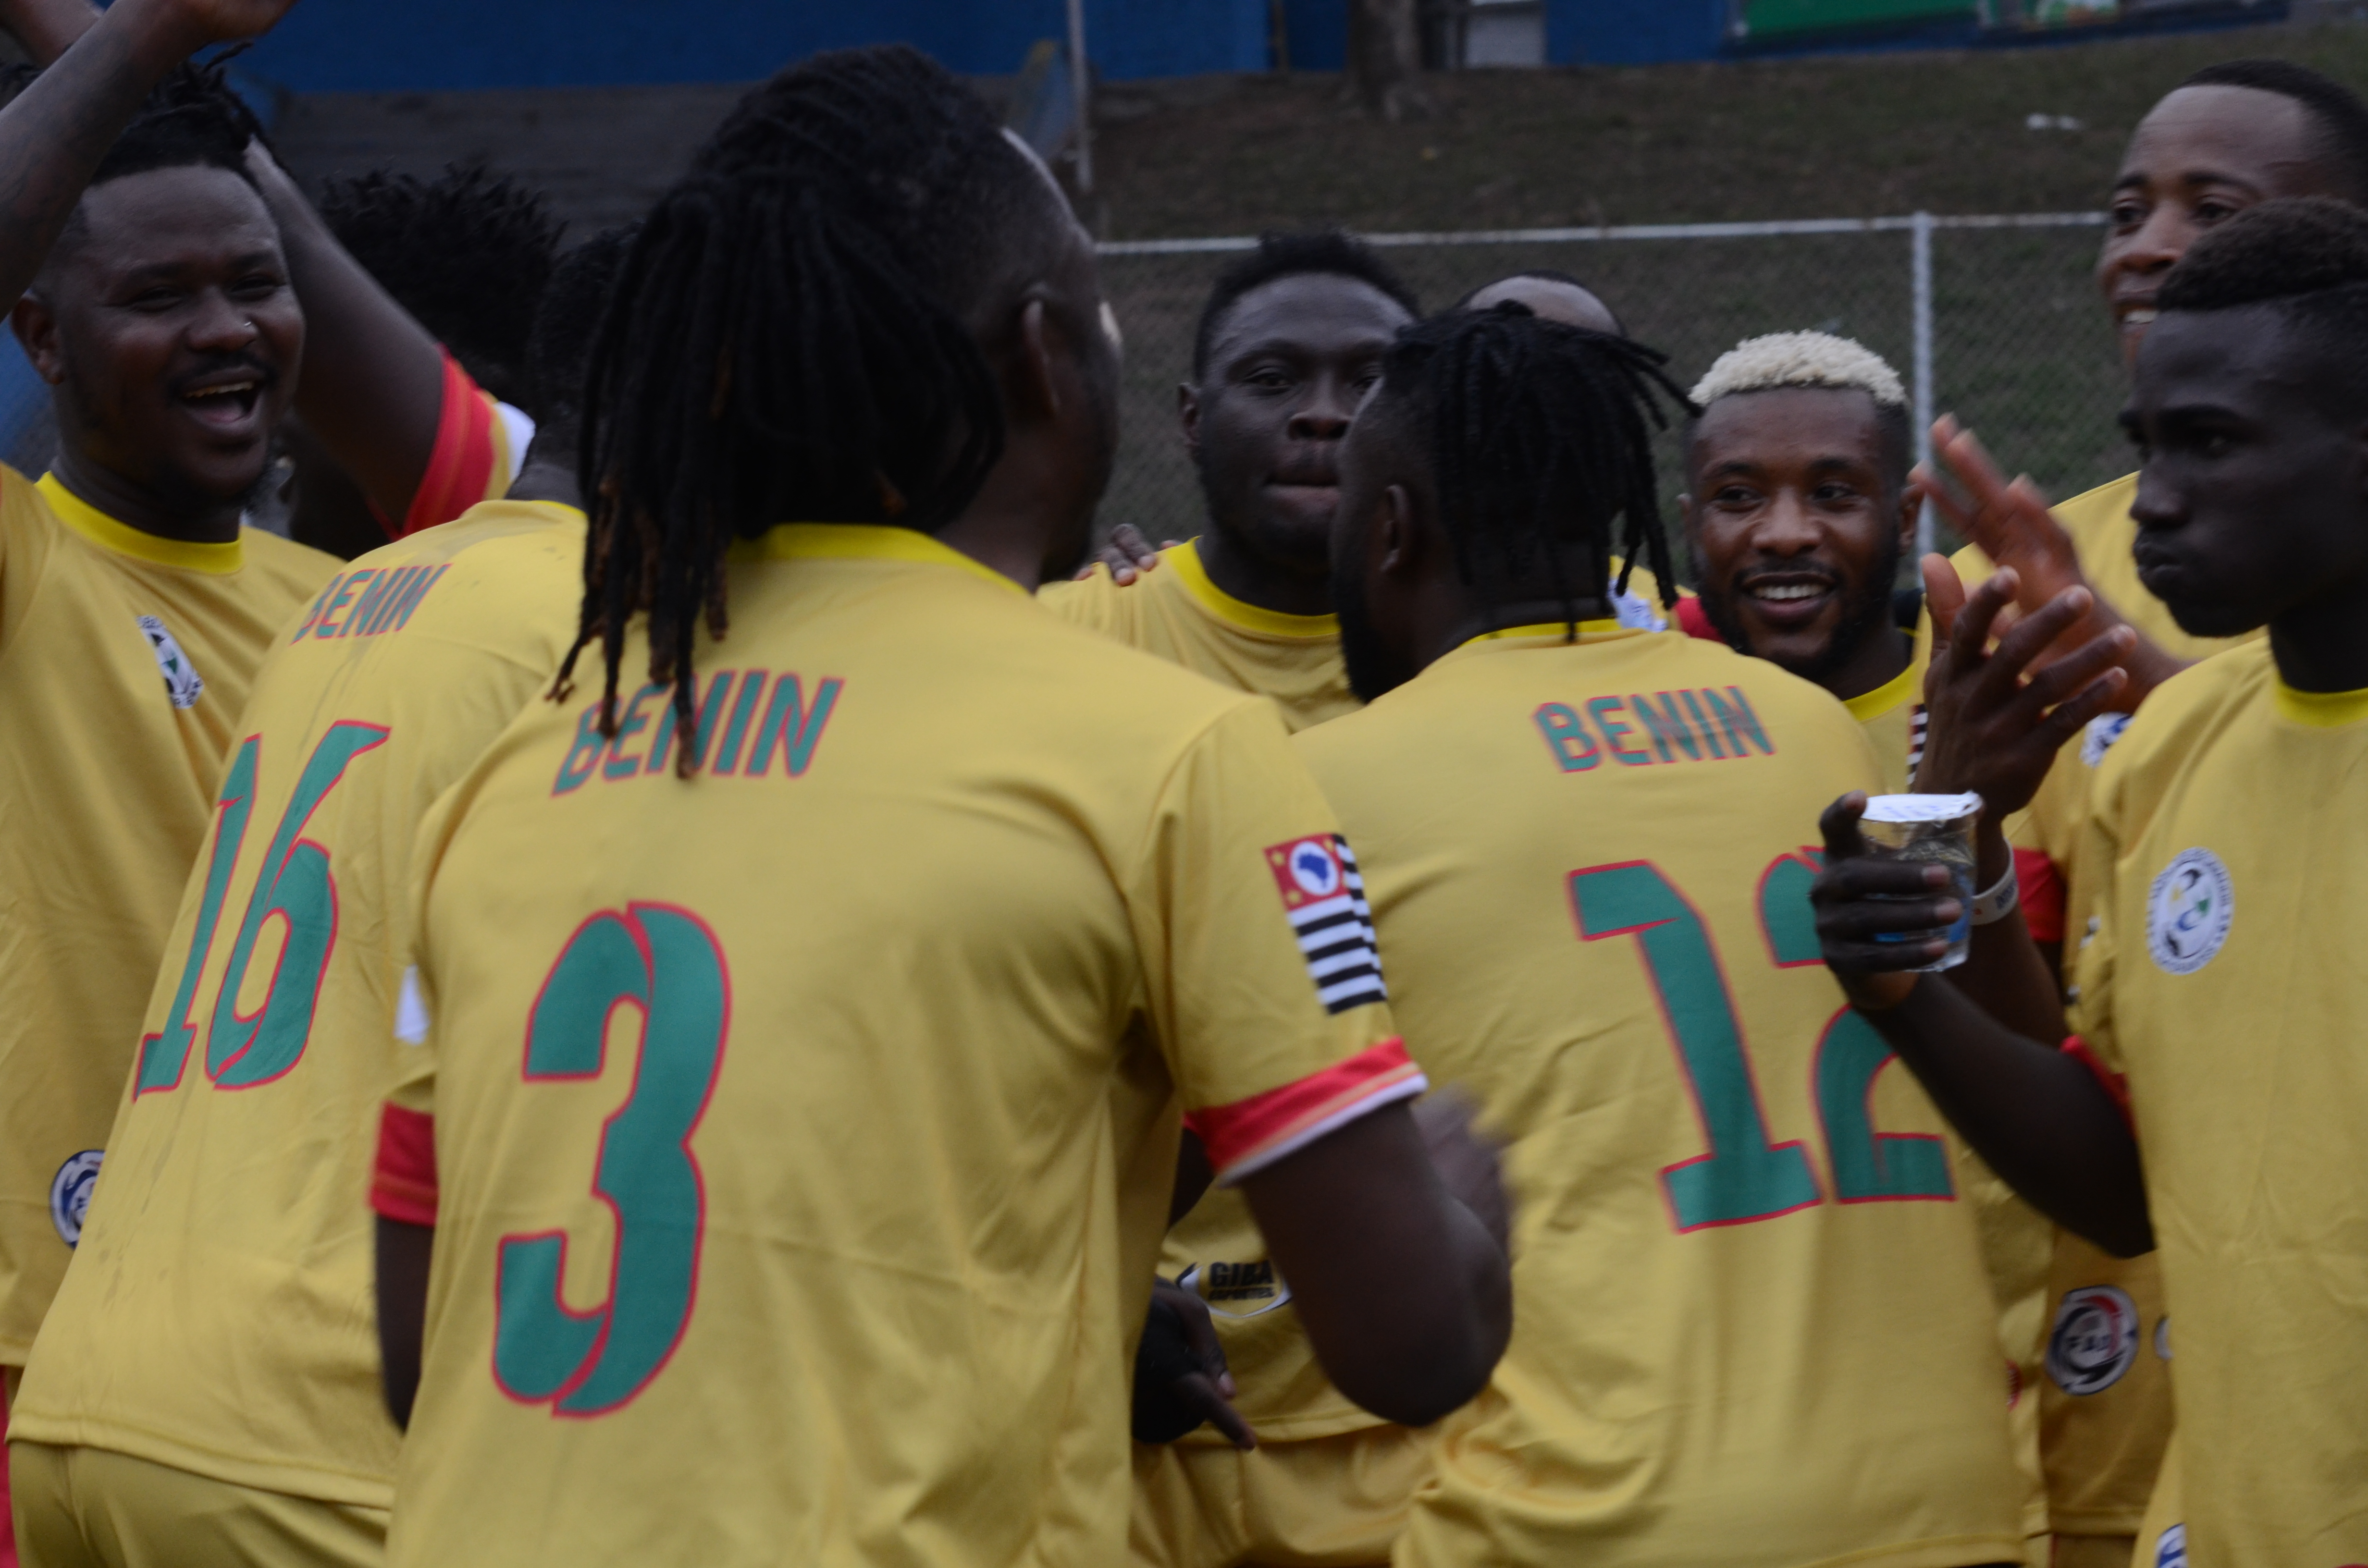 Na imagem, os atletas do time do Benin comemorando